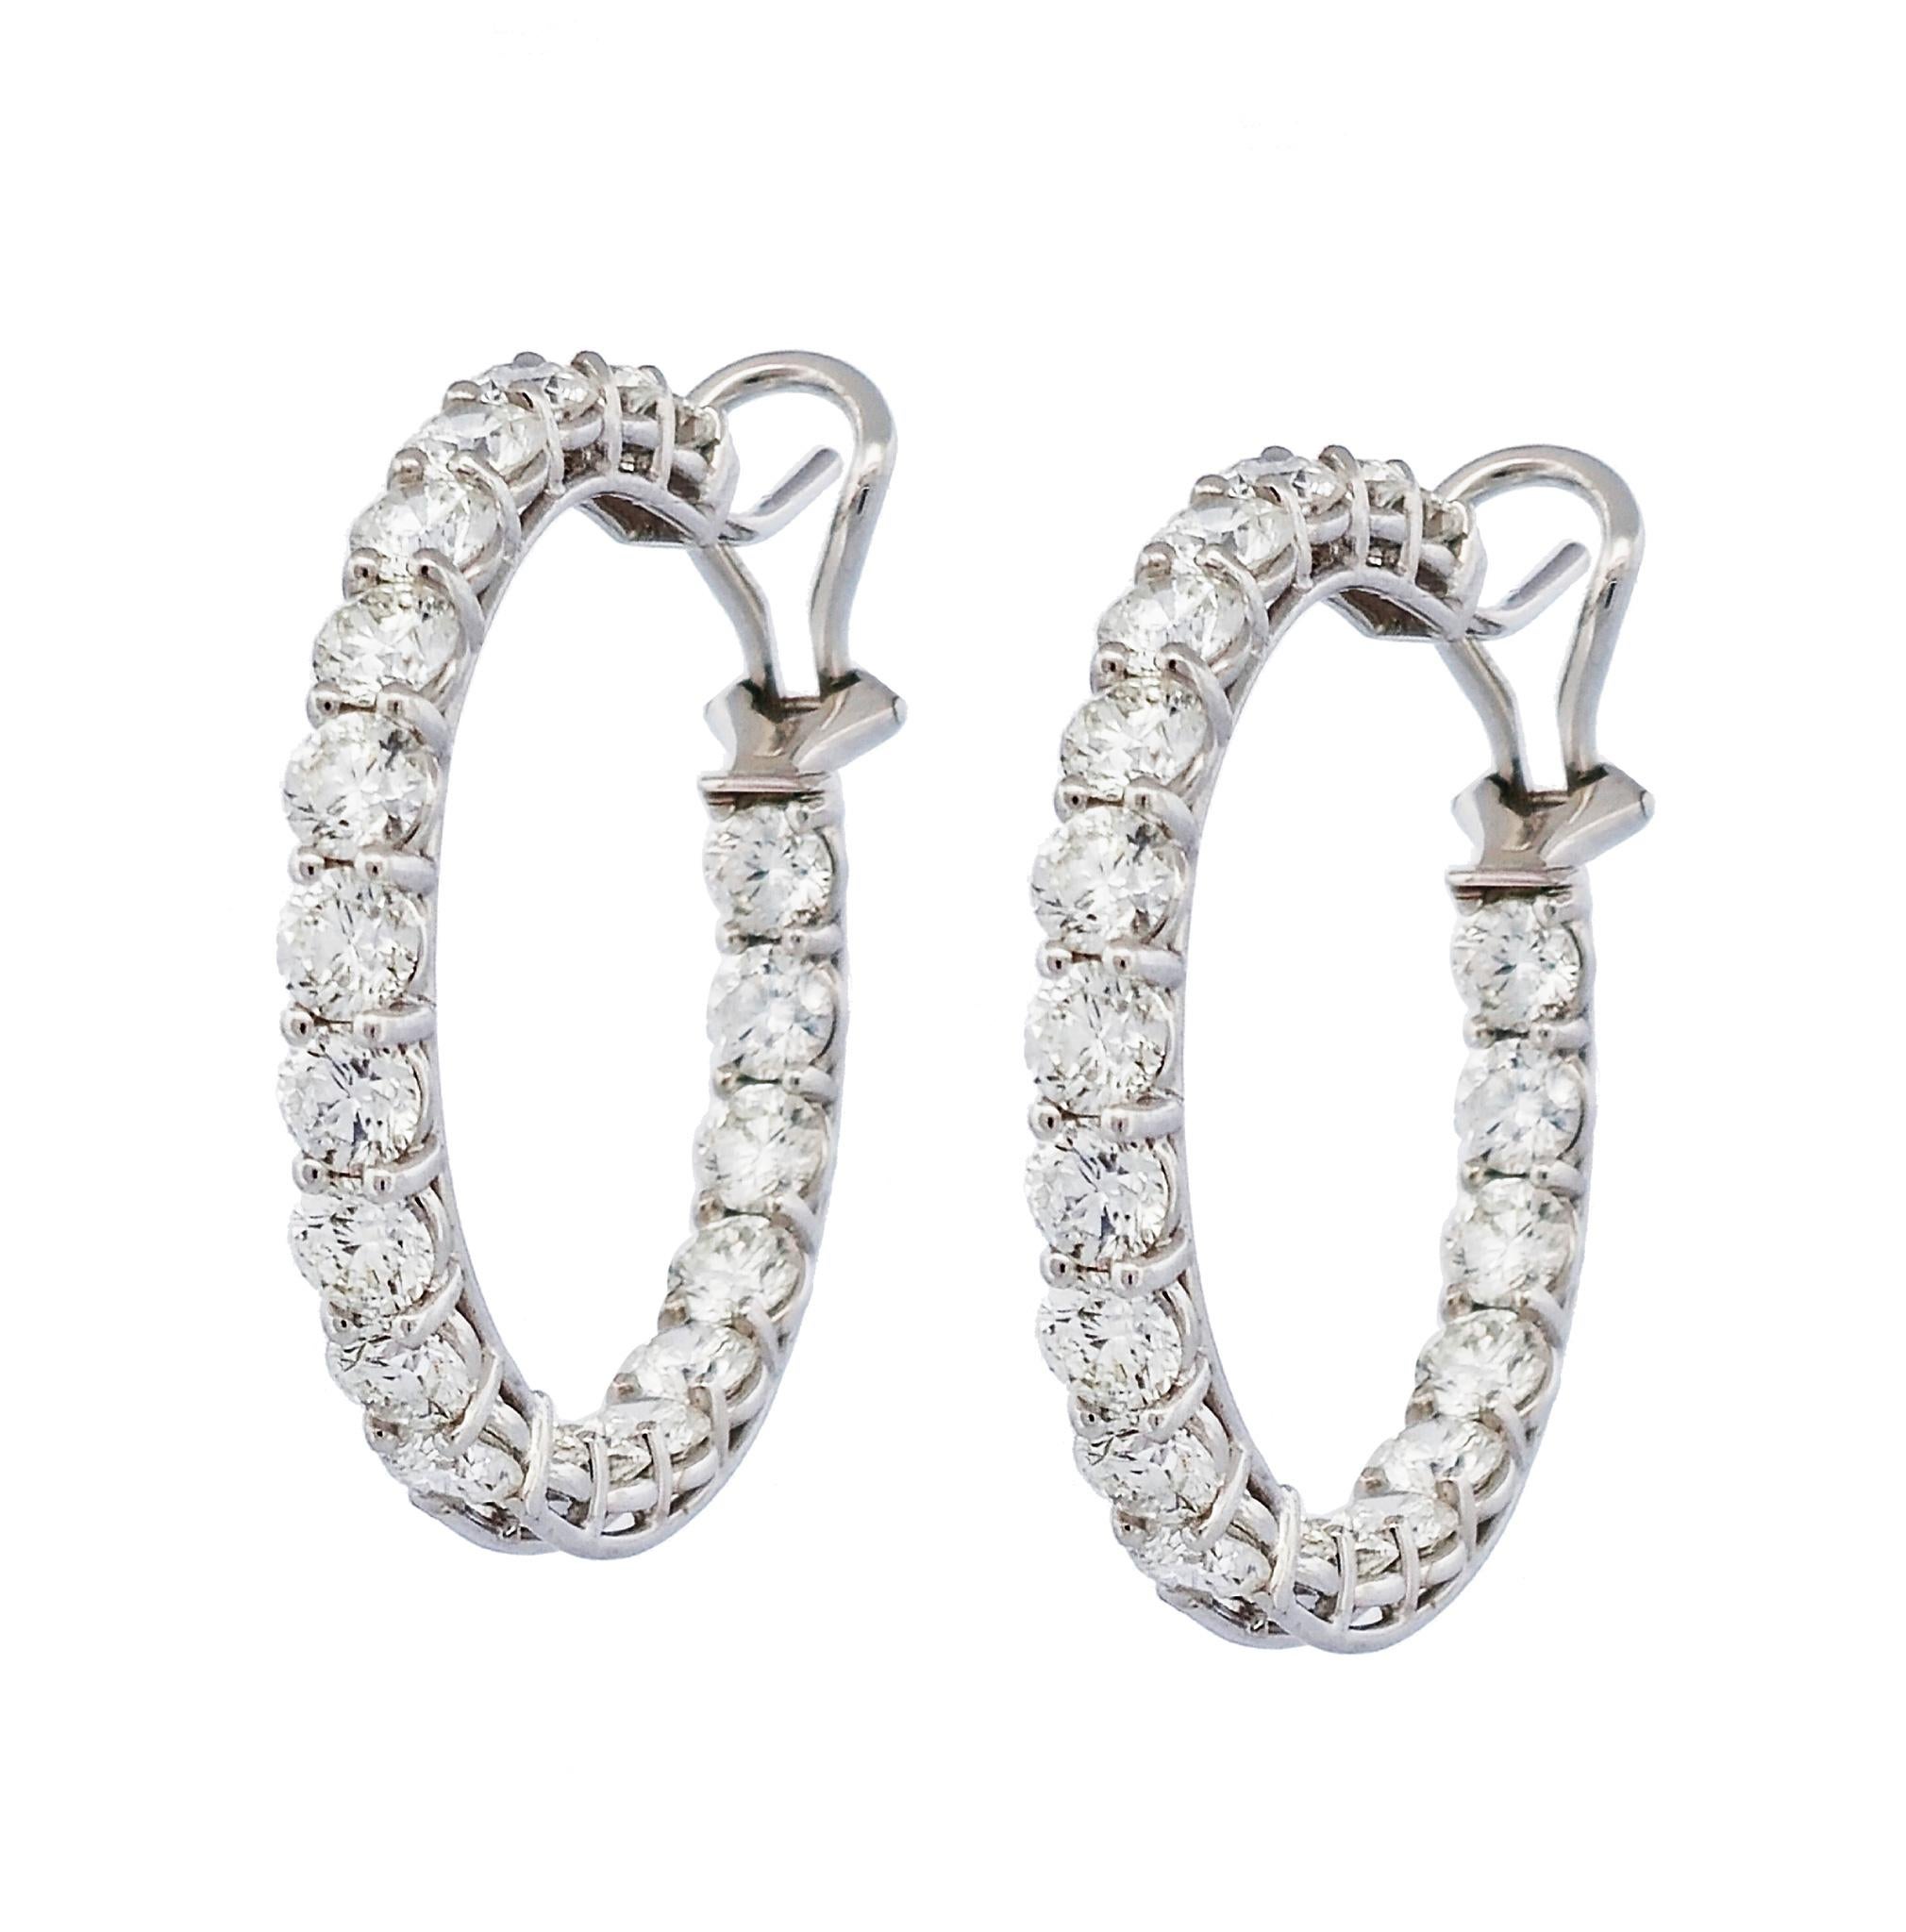 Les luxueuses boucles d'oreilles en diamant de la Collection H&H, faites à la main, sont un ajout éblouissant à toute garde-robe. Créées avec 40 diamants ronds de taille brillant étincelants, serties dans de l'or blanc 18 carats avec une monture à